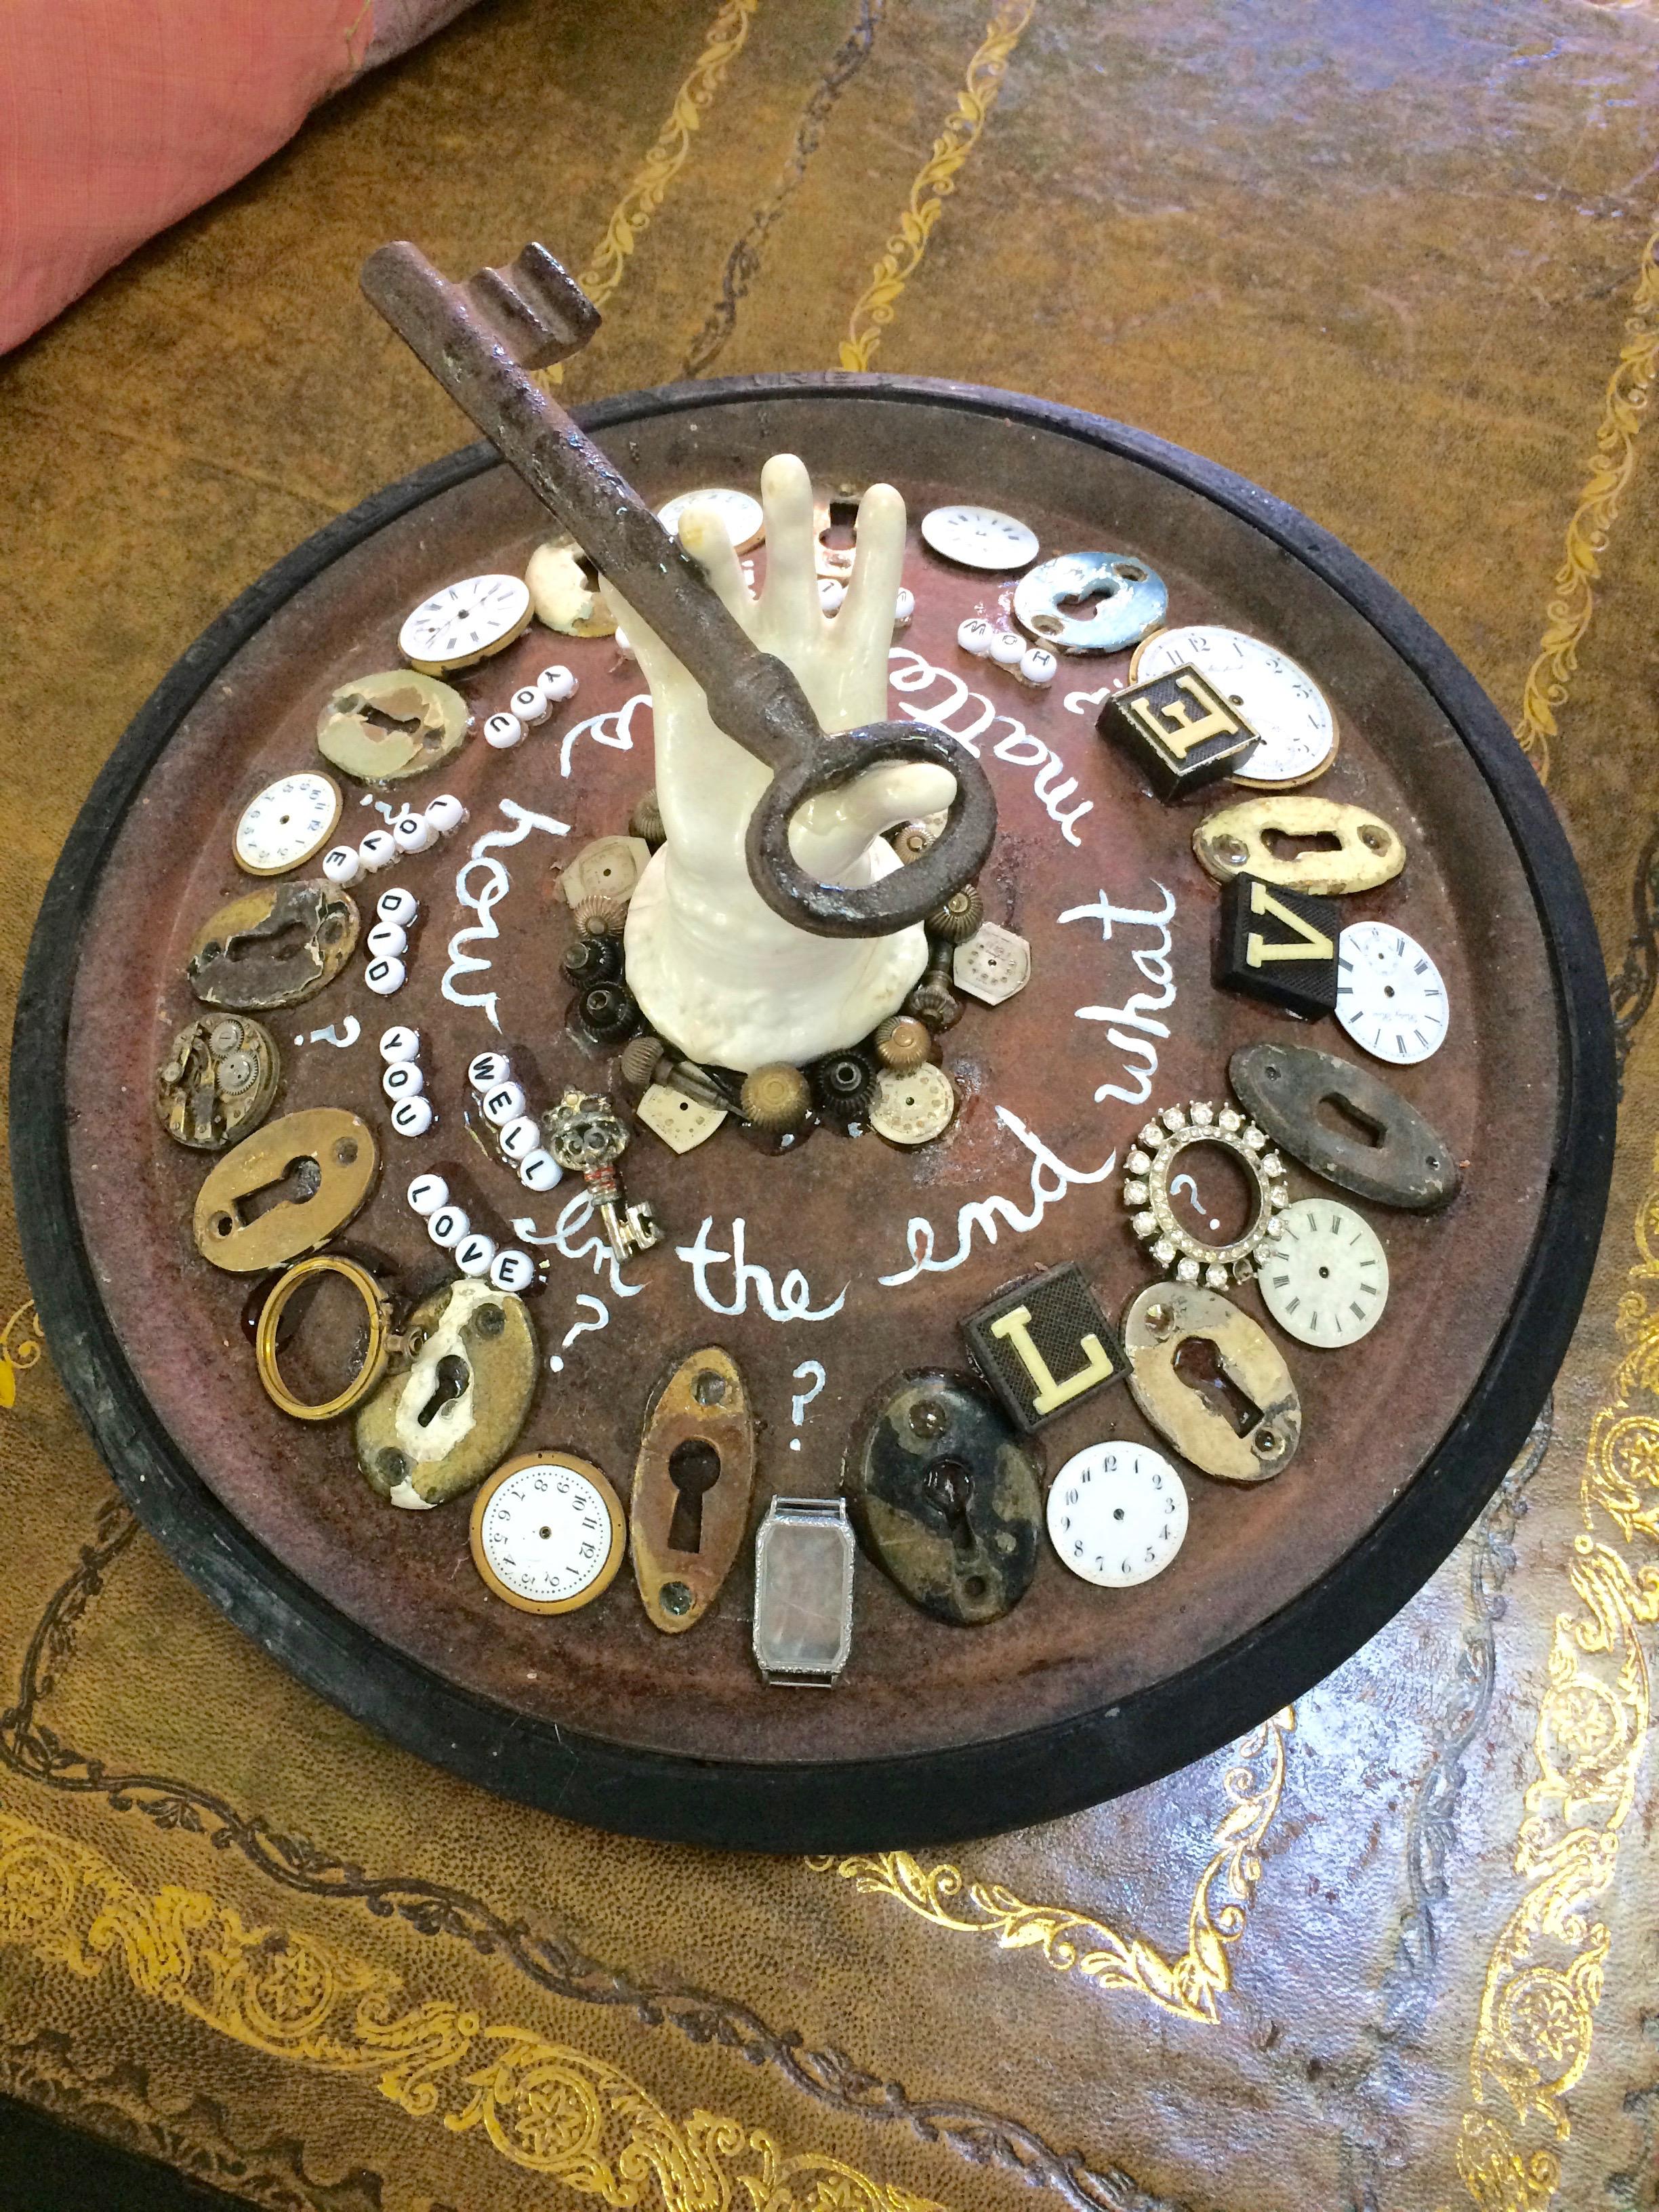 Sculpture d'objets trouvés merveilleusement imaginative ayant pour base une vieille roue de boîte à savon, incrustée de trous de serrure, de cadrans d'horloge, d'une main en porcelaine antique sortant du centre avec une énorme clé, et d'un message